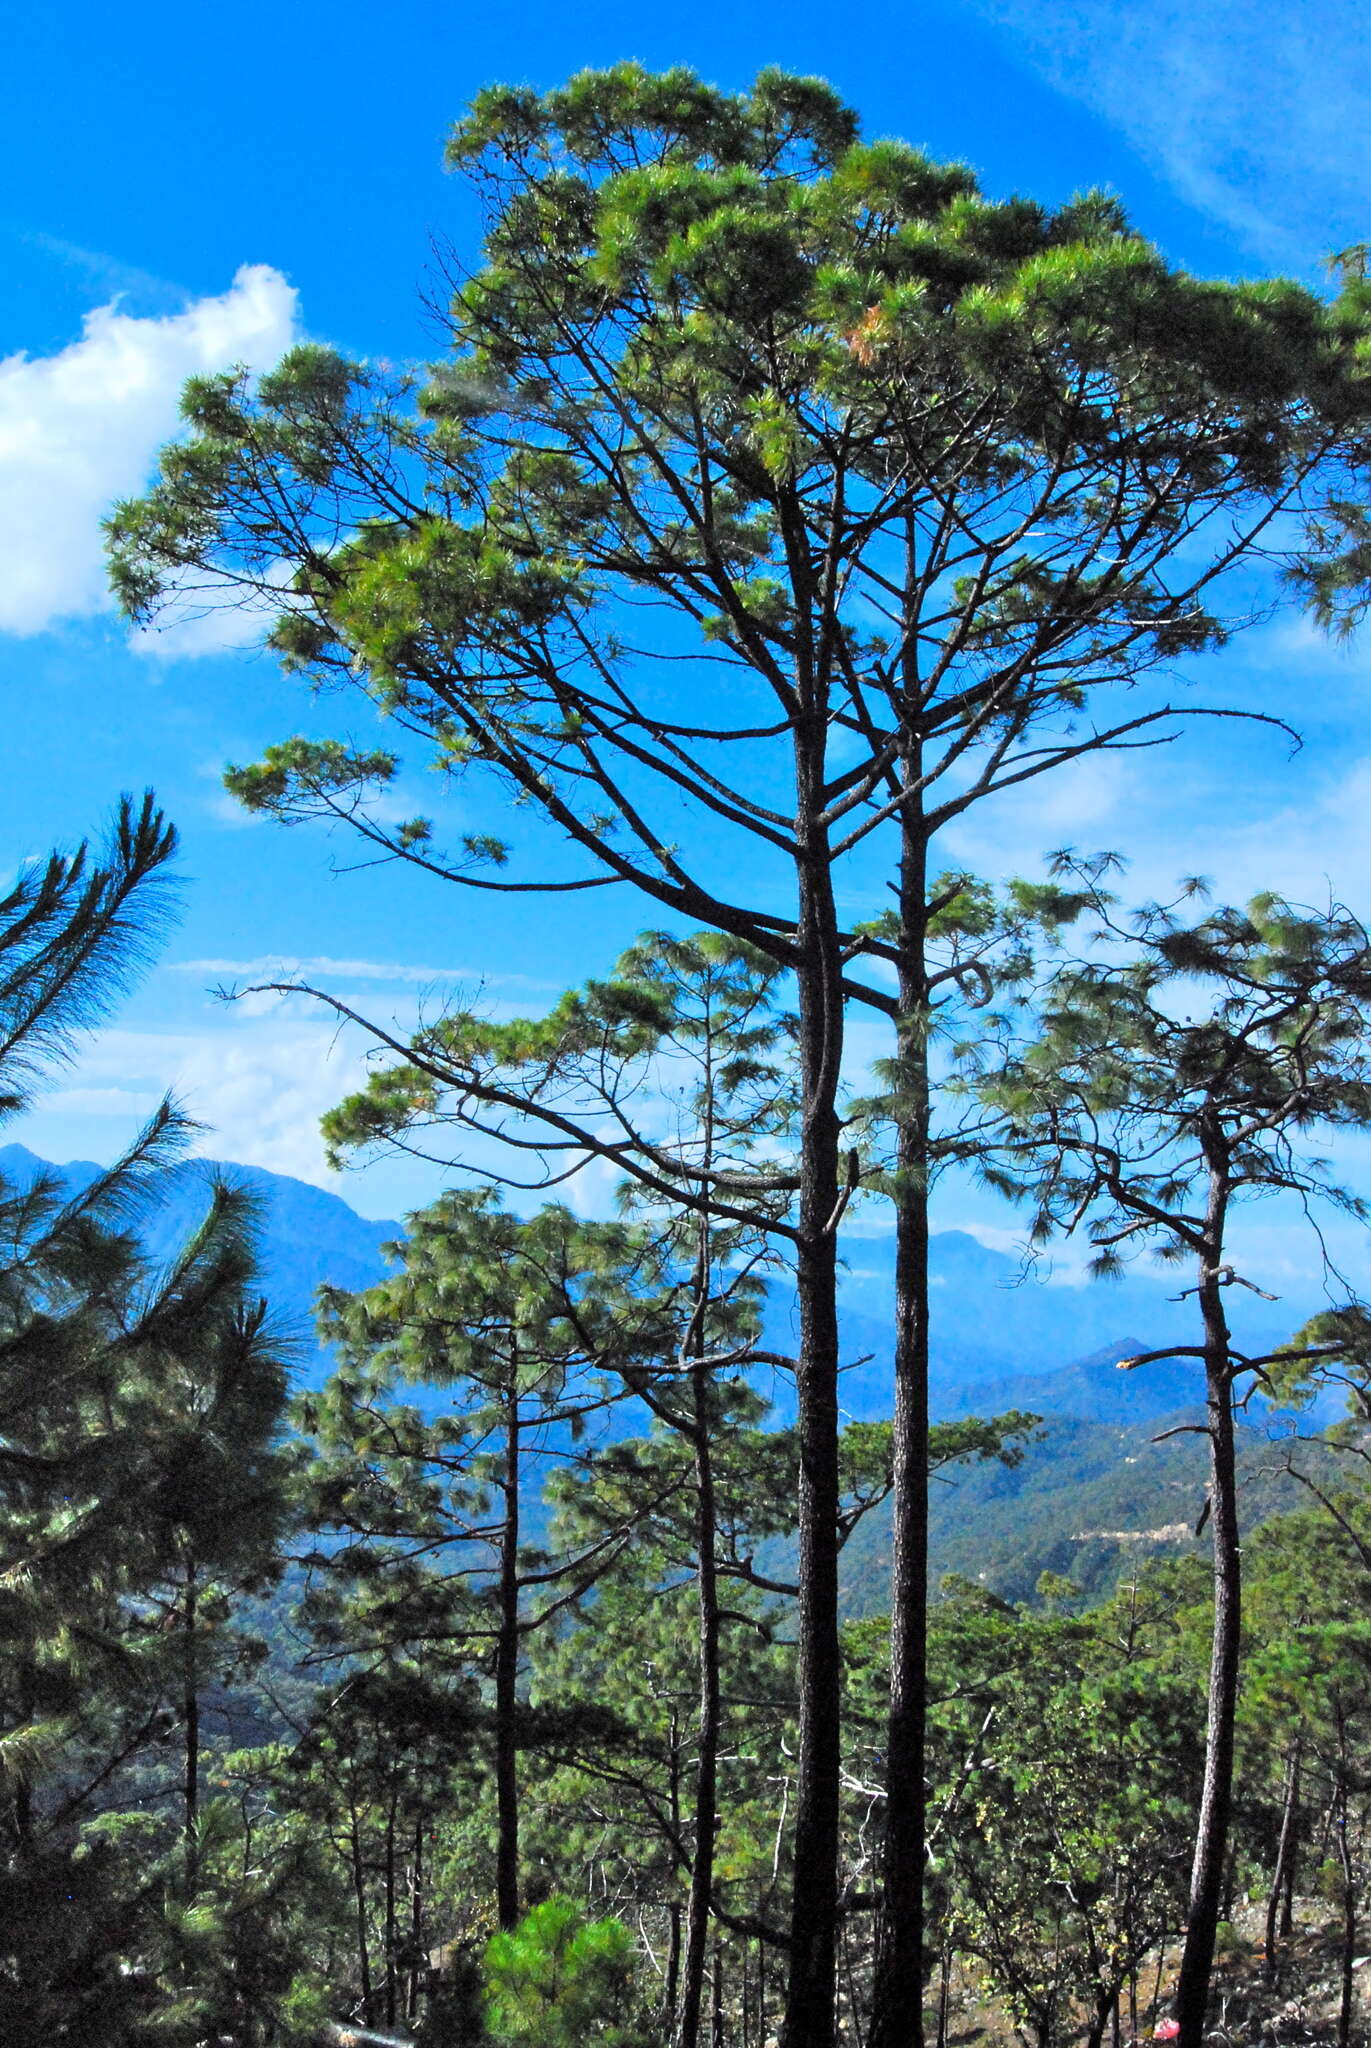 Image of Herrera's Pine